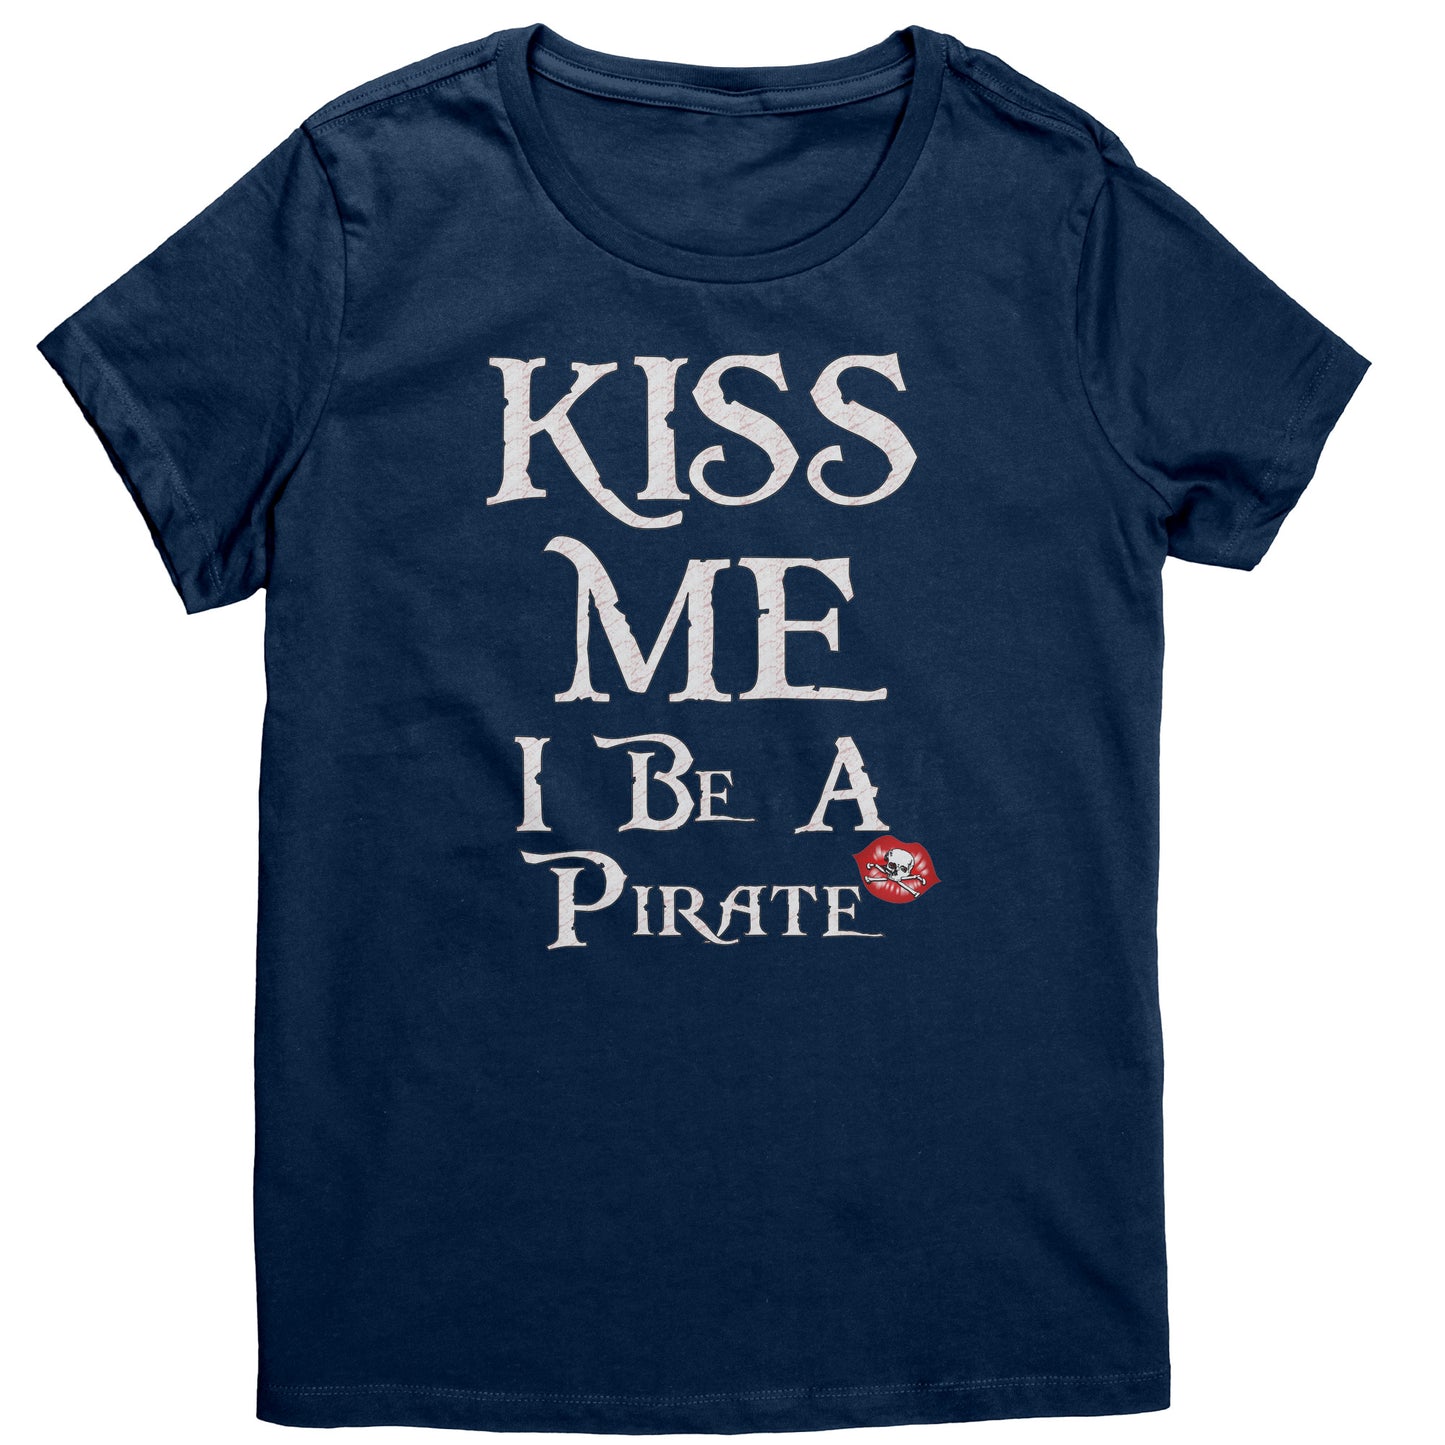 Kiss Me I Be A Pirate